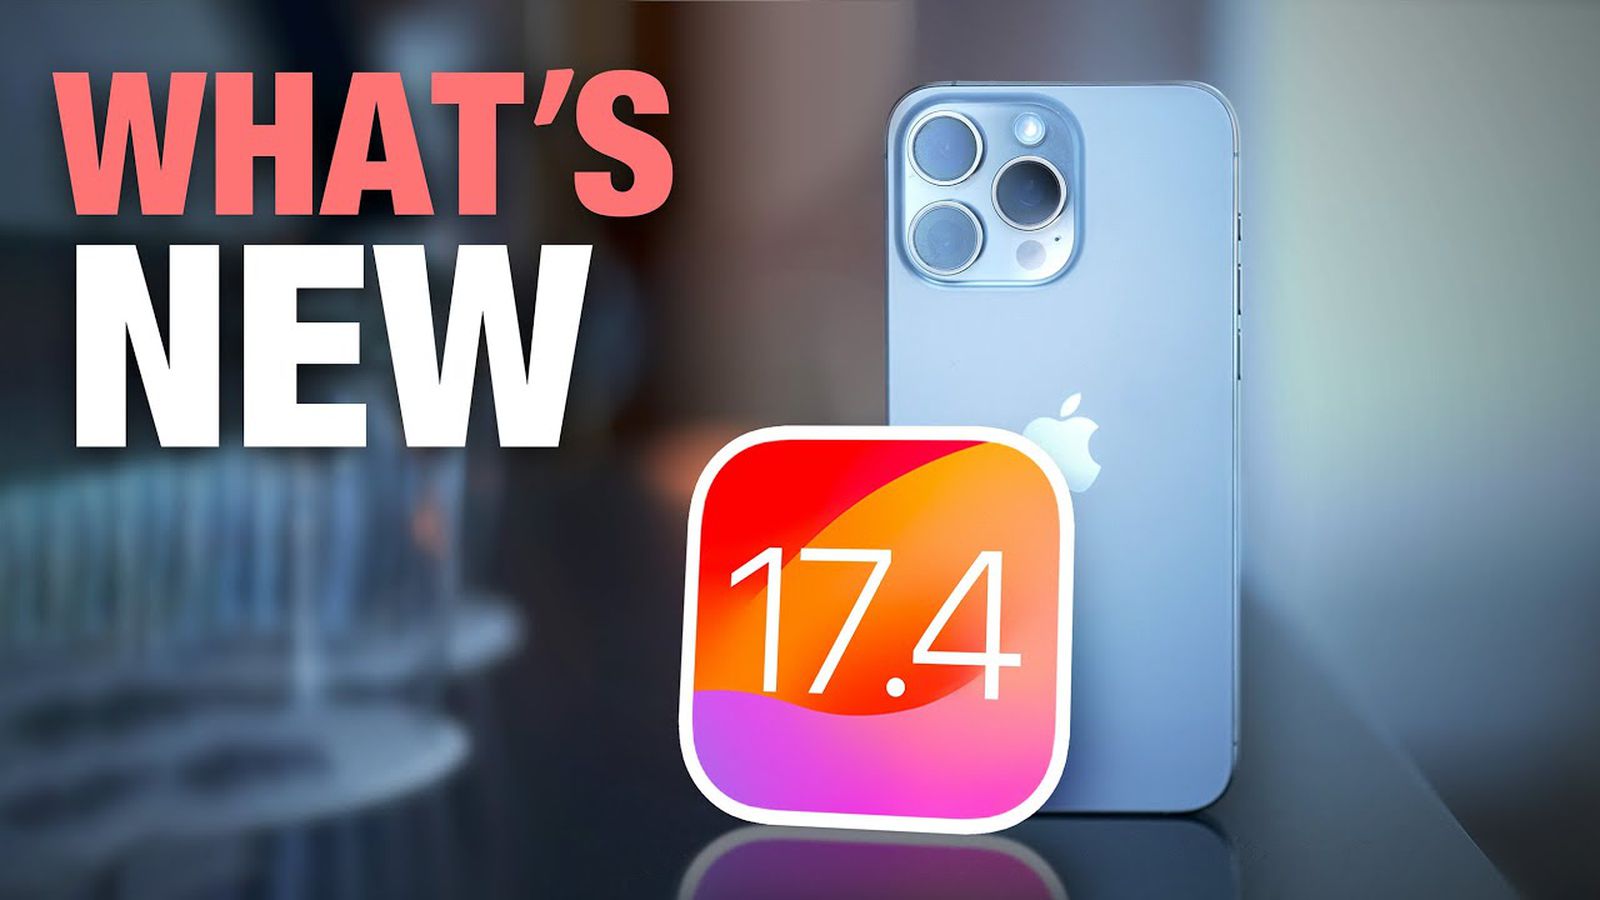 Apple lanceert iOS 17.4 en iPadOS 17.4 met EU-appwijzigingen, nieuwe emoji's, podcasttranscripties en meer